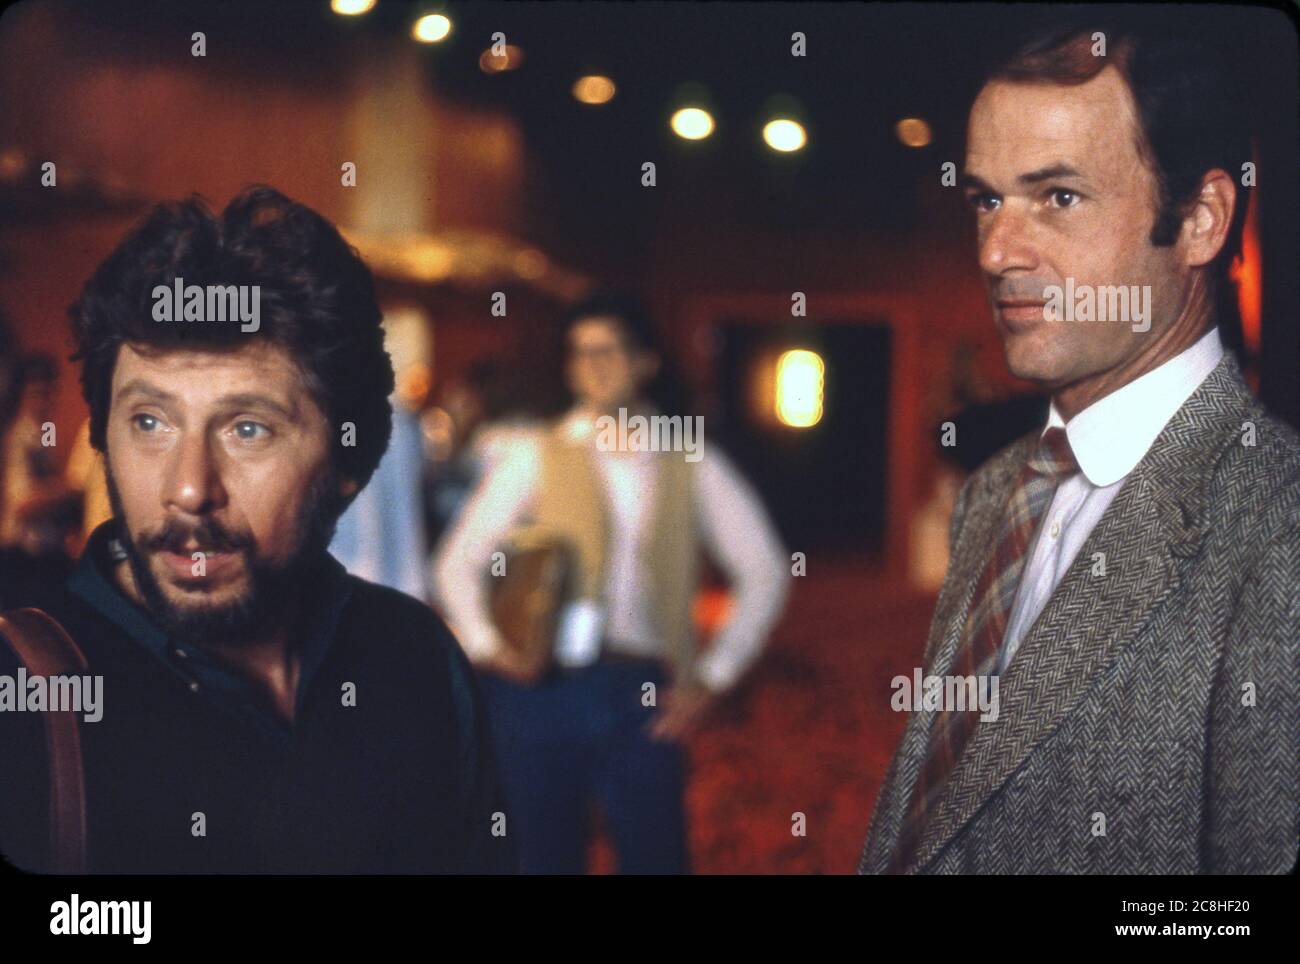 Produktionsaufnahme der Fernsehshow Lou Grant mit den Schauspielern Robert Walden und Jack Bannon. Stockfoto